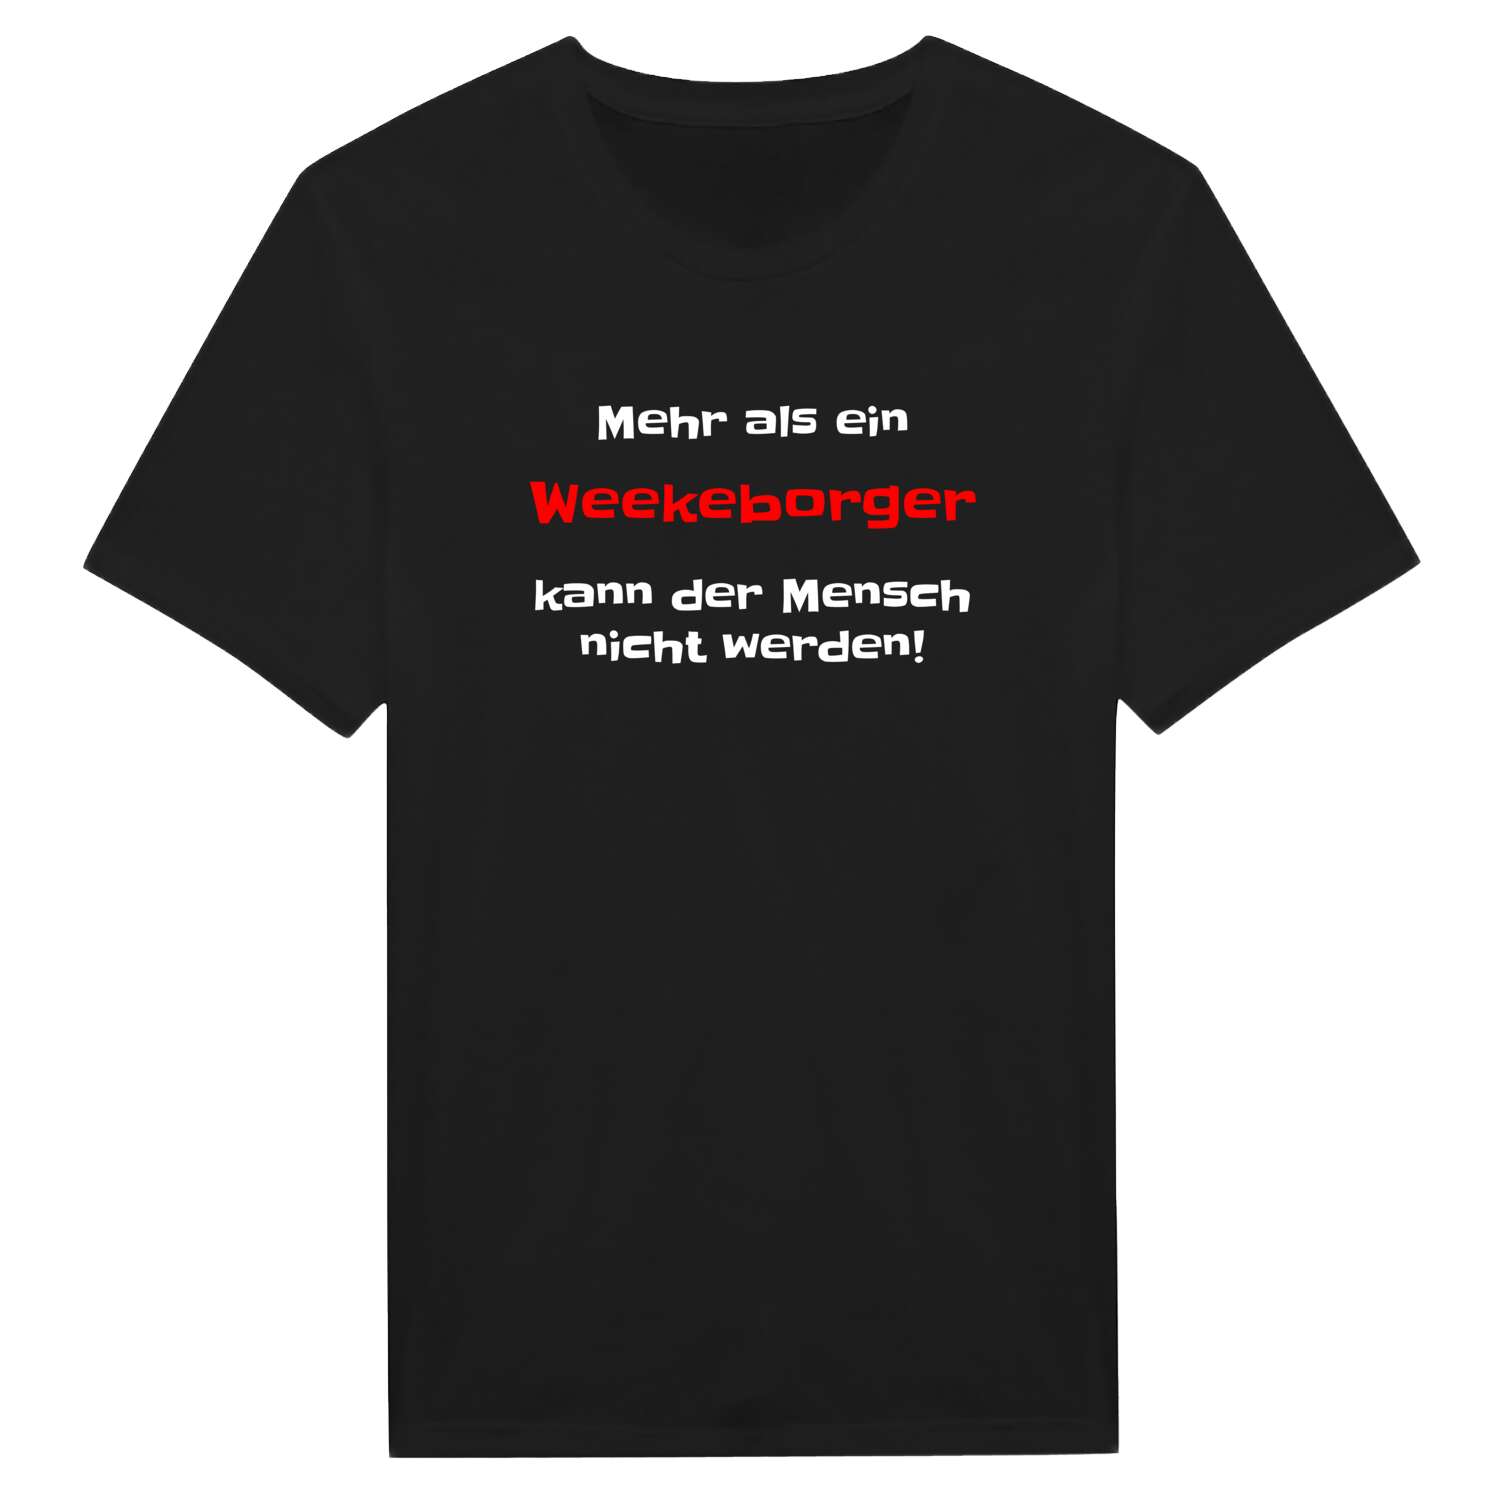 Weekeborg T-Shirt »Mehr als ein«